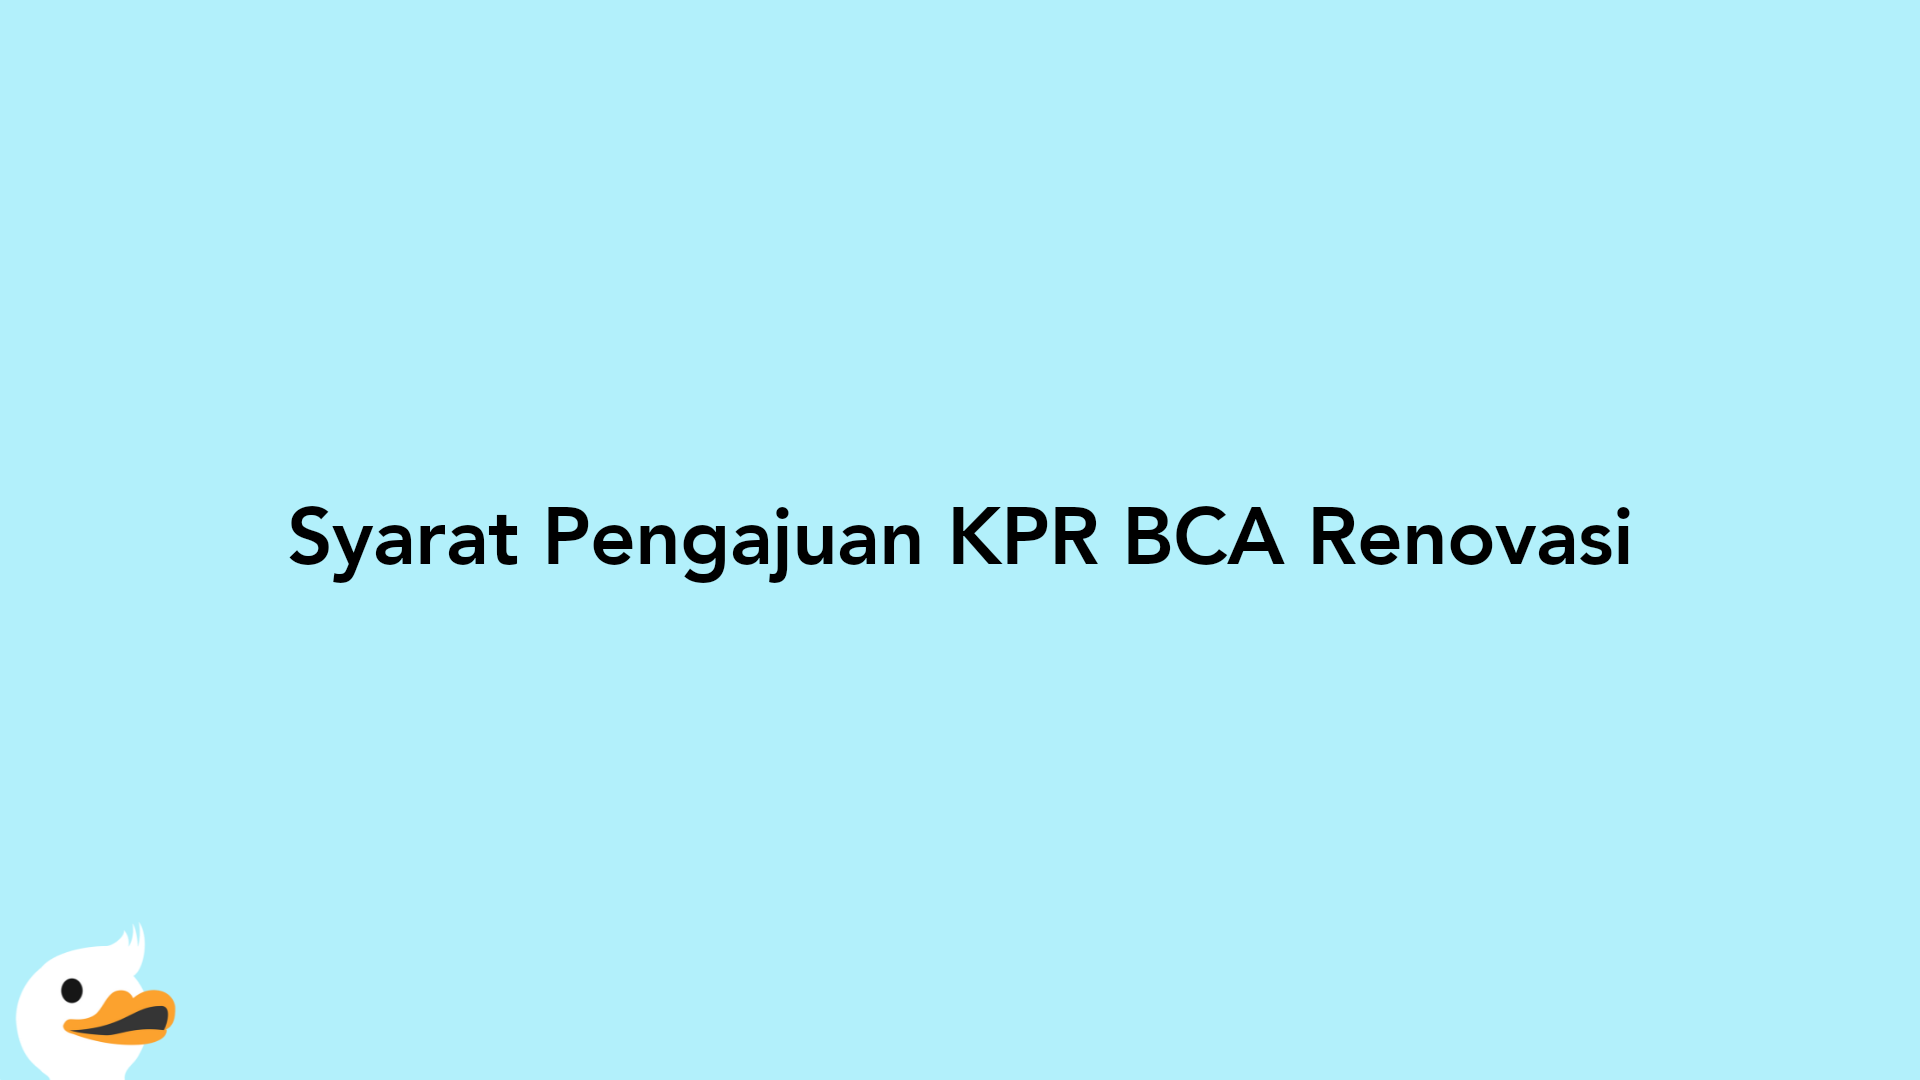 Syarat Pengajuan KPR BCA Renovasi